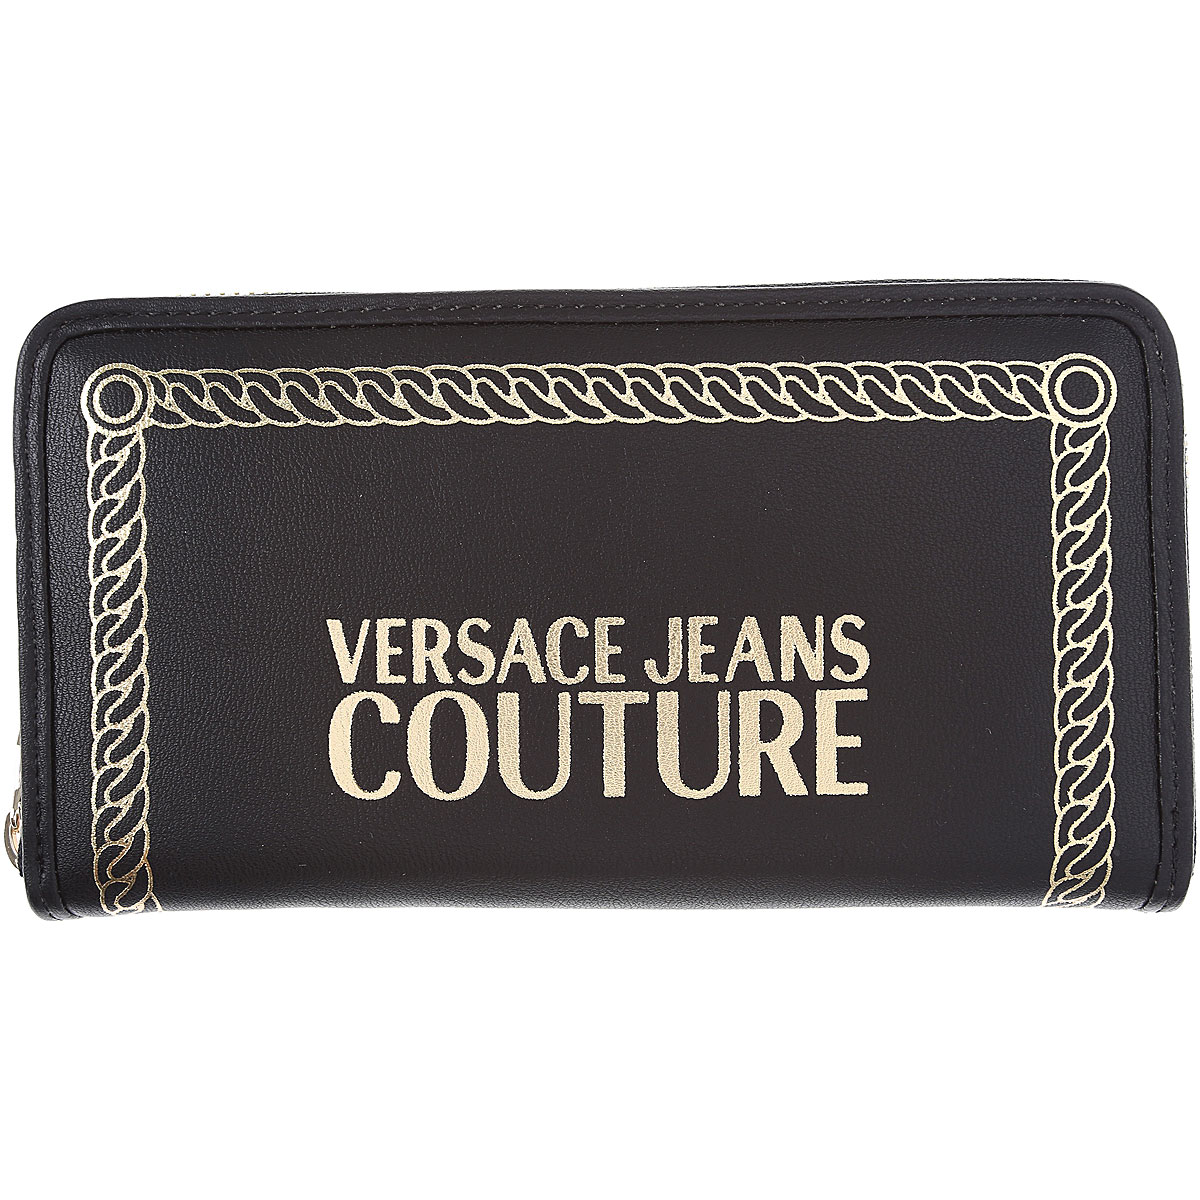 Versace Jeans Couture Brieftasche für Damen, Portemonnaie, Geldbörsen, Geldbeutel Günstig im Sale, Schwarz, Poyiester, 2017